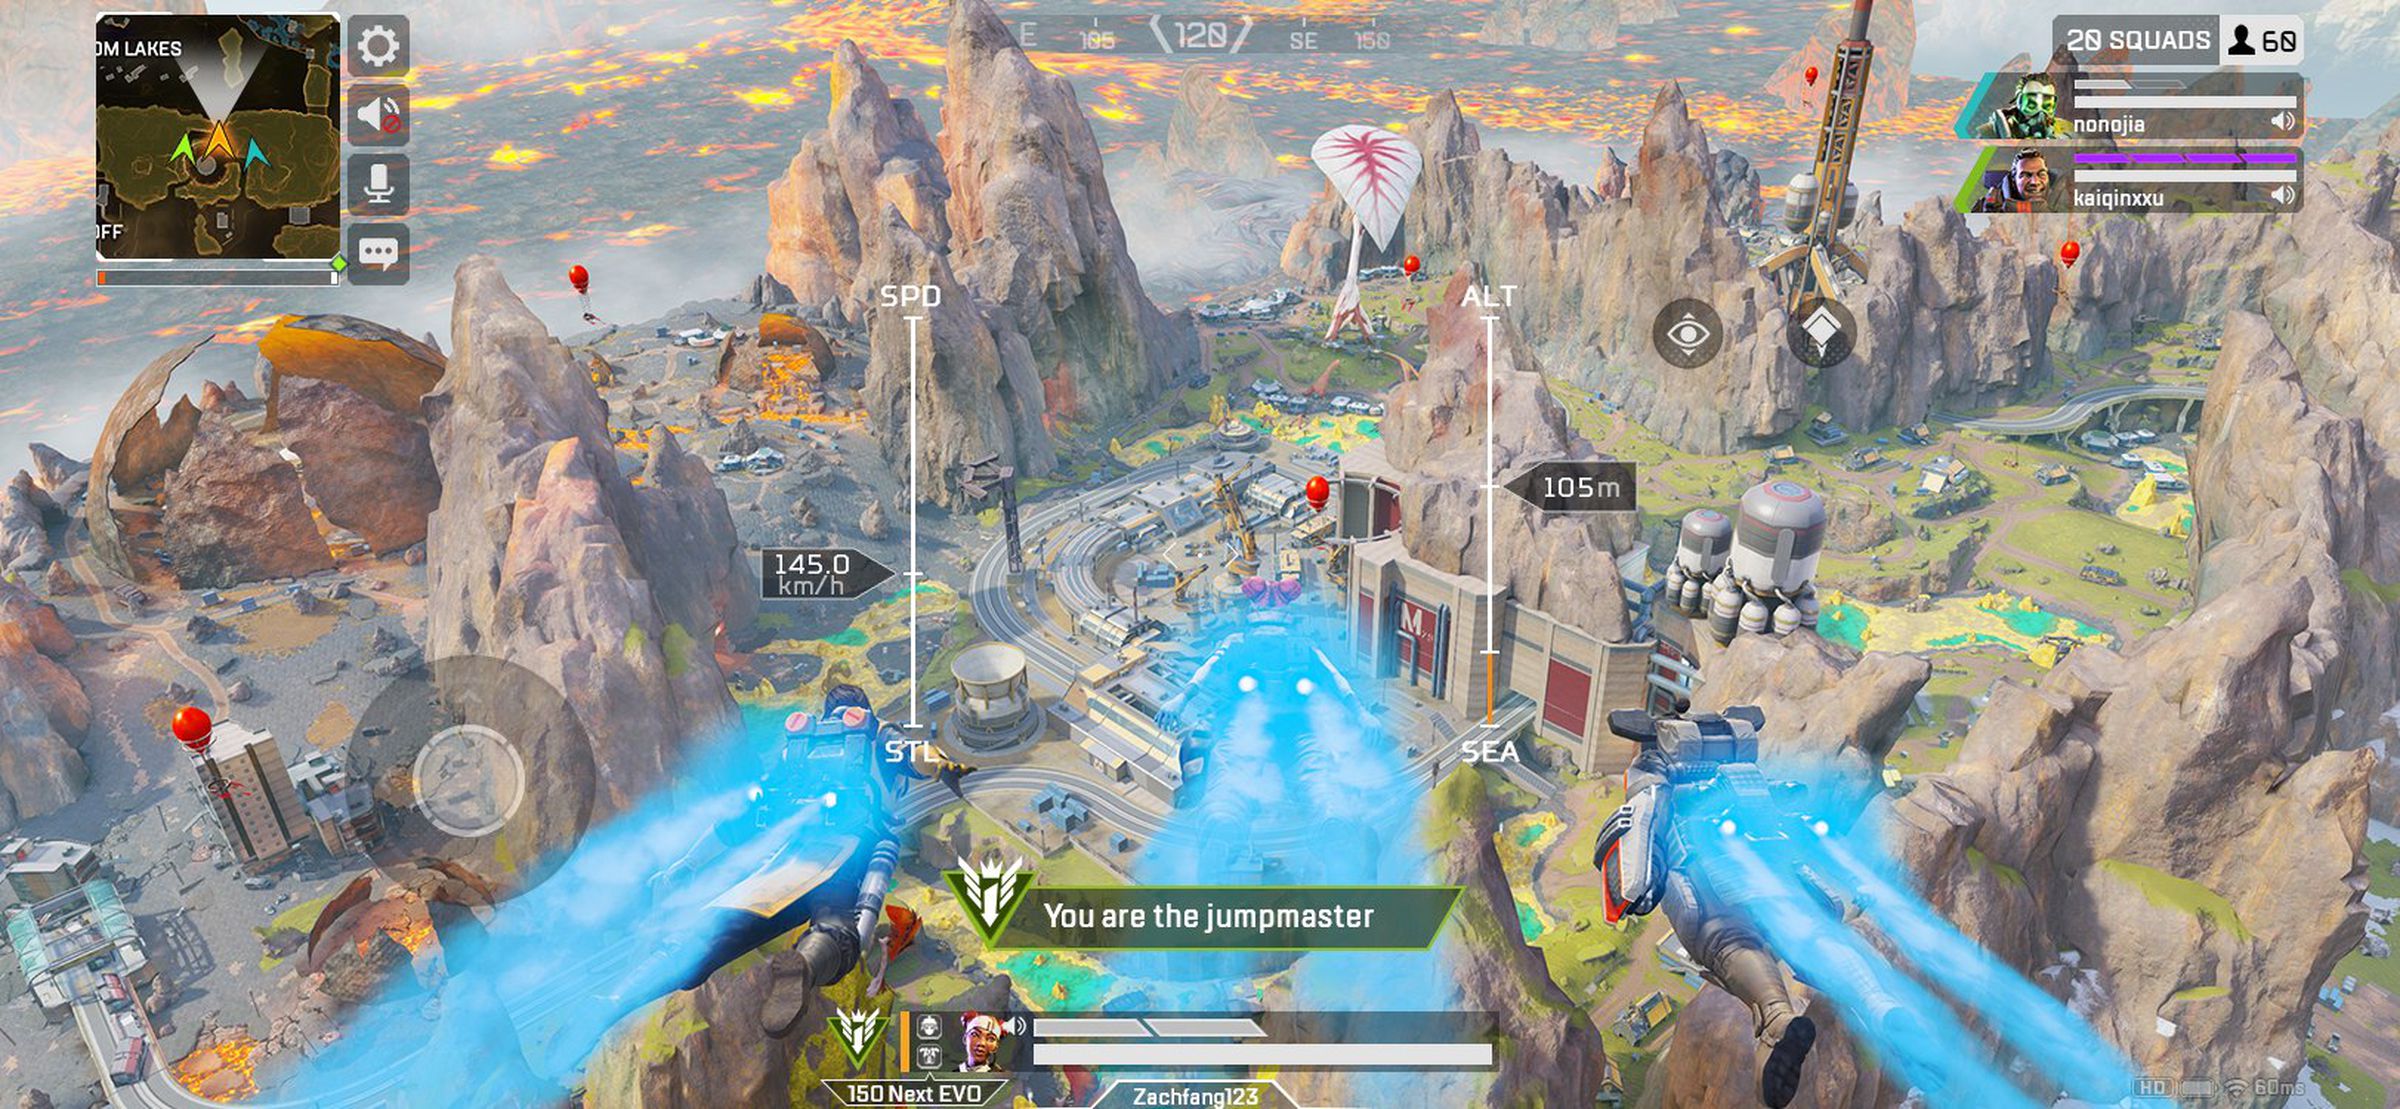 Скриншот Apex Legends Mobile: река, протекающая через скалистый ландшафт;  подпись говорит 